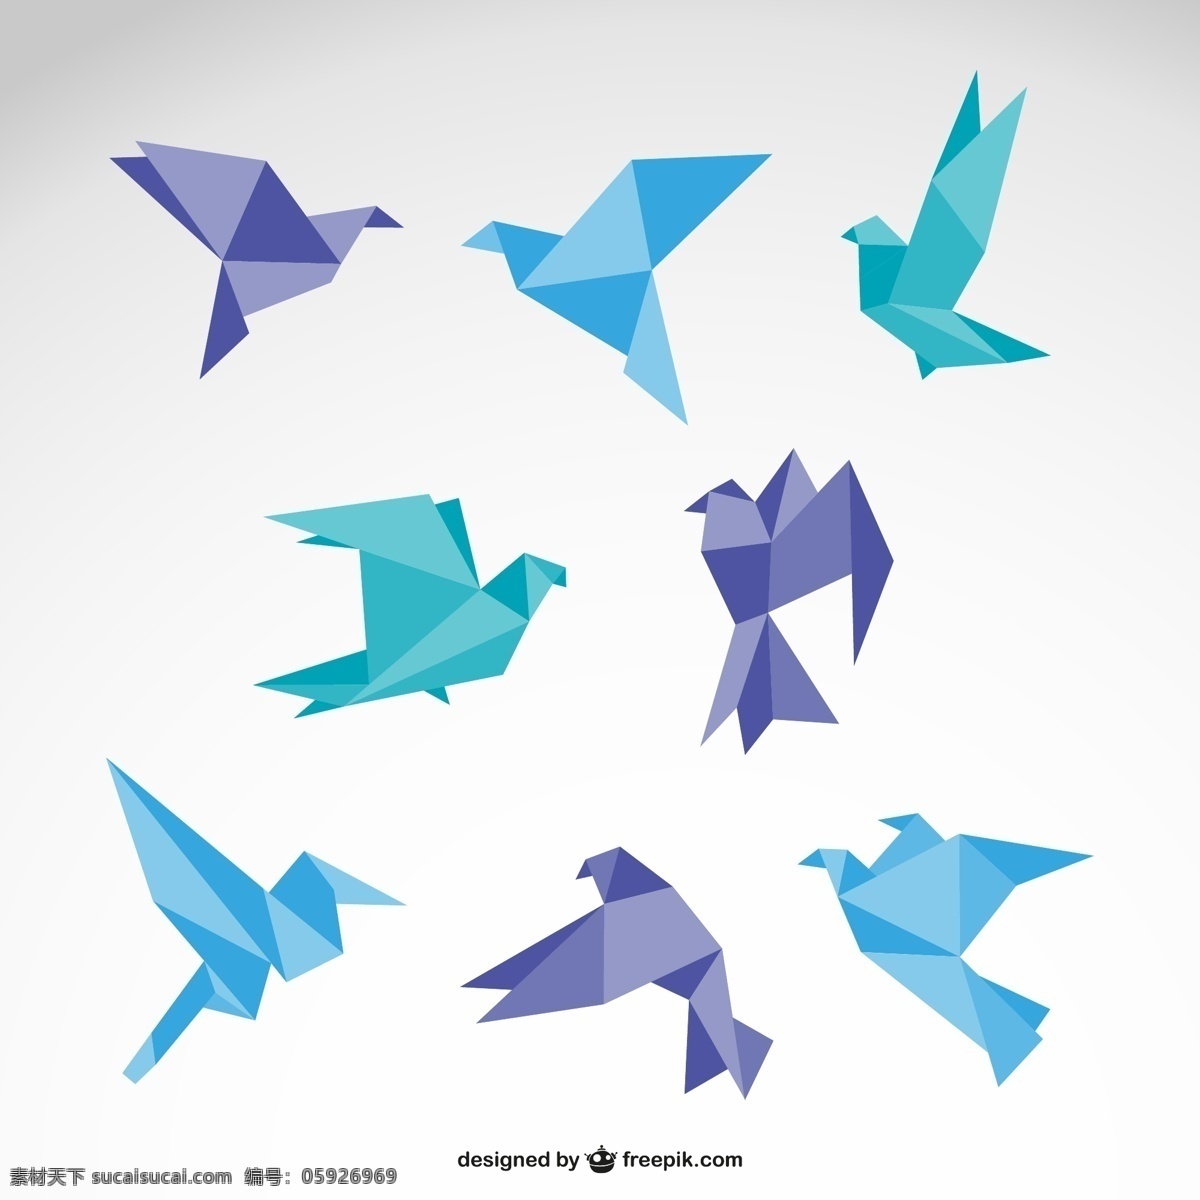 彩色 折纸 鸽子 矢量 形状 多边形 抽象 鸟类 千纸鹤 卡通 插画 背景 海报 画册 矢量动物 生物世界